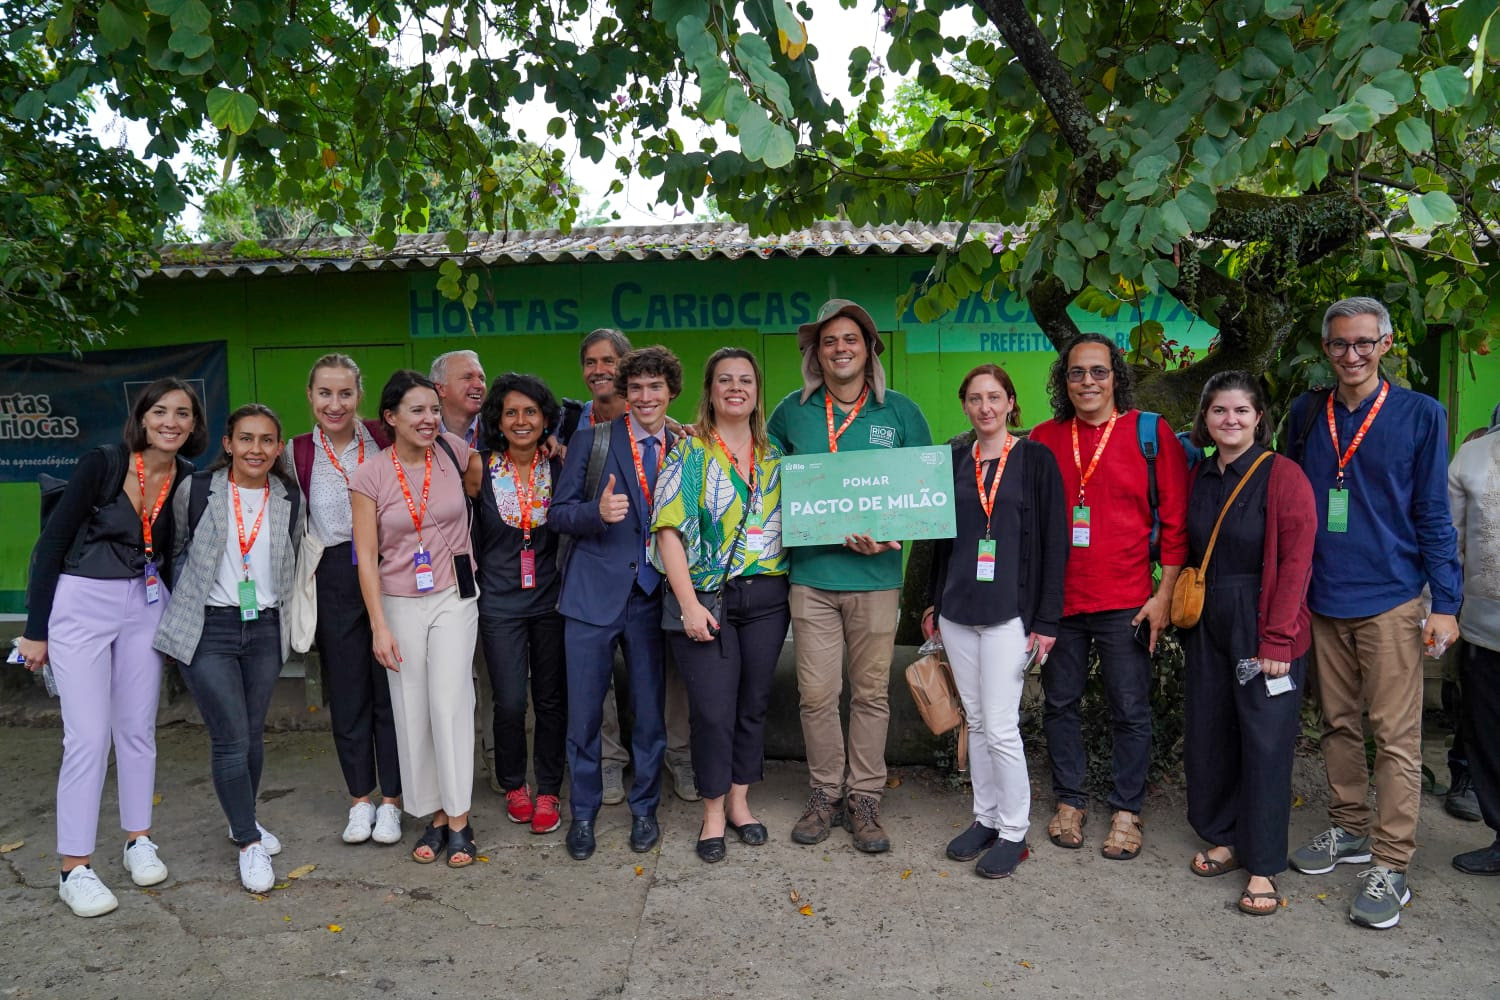 Pacto de Milán: el programa Hortas Cariocas promueve la siembra con representantes de diferentes continentes – Municipio de Río de Janeiro